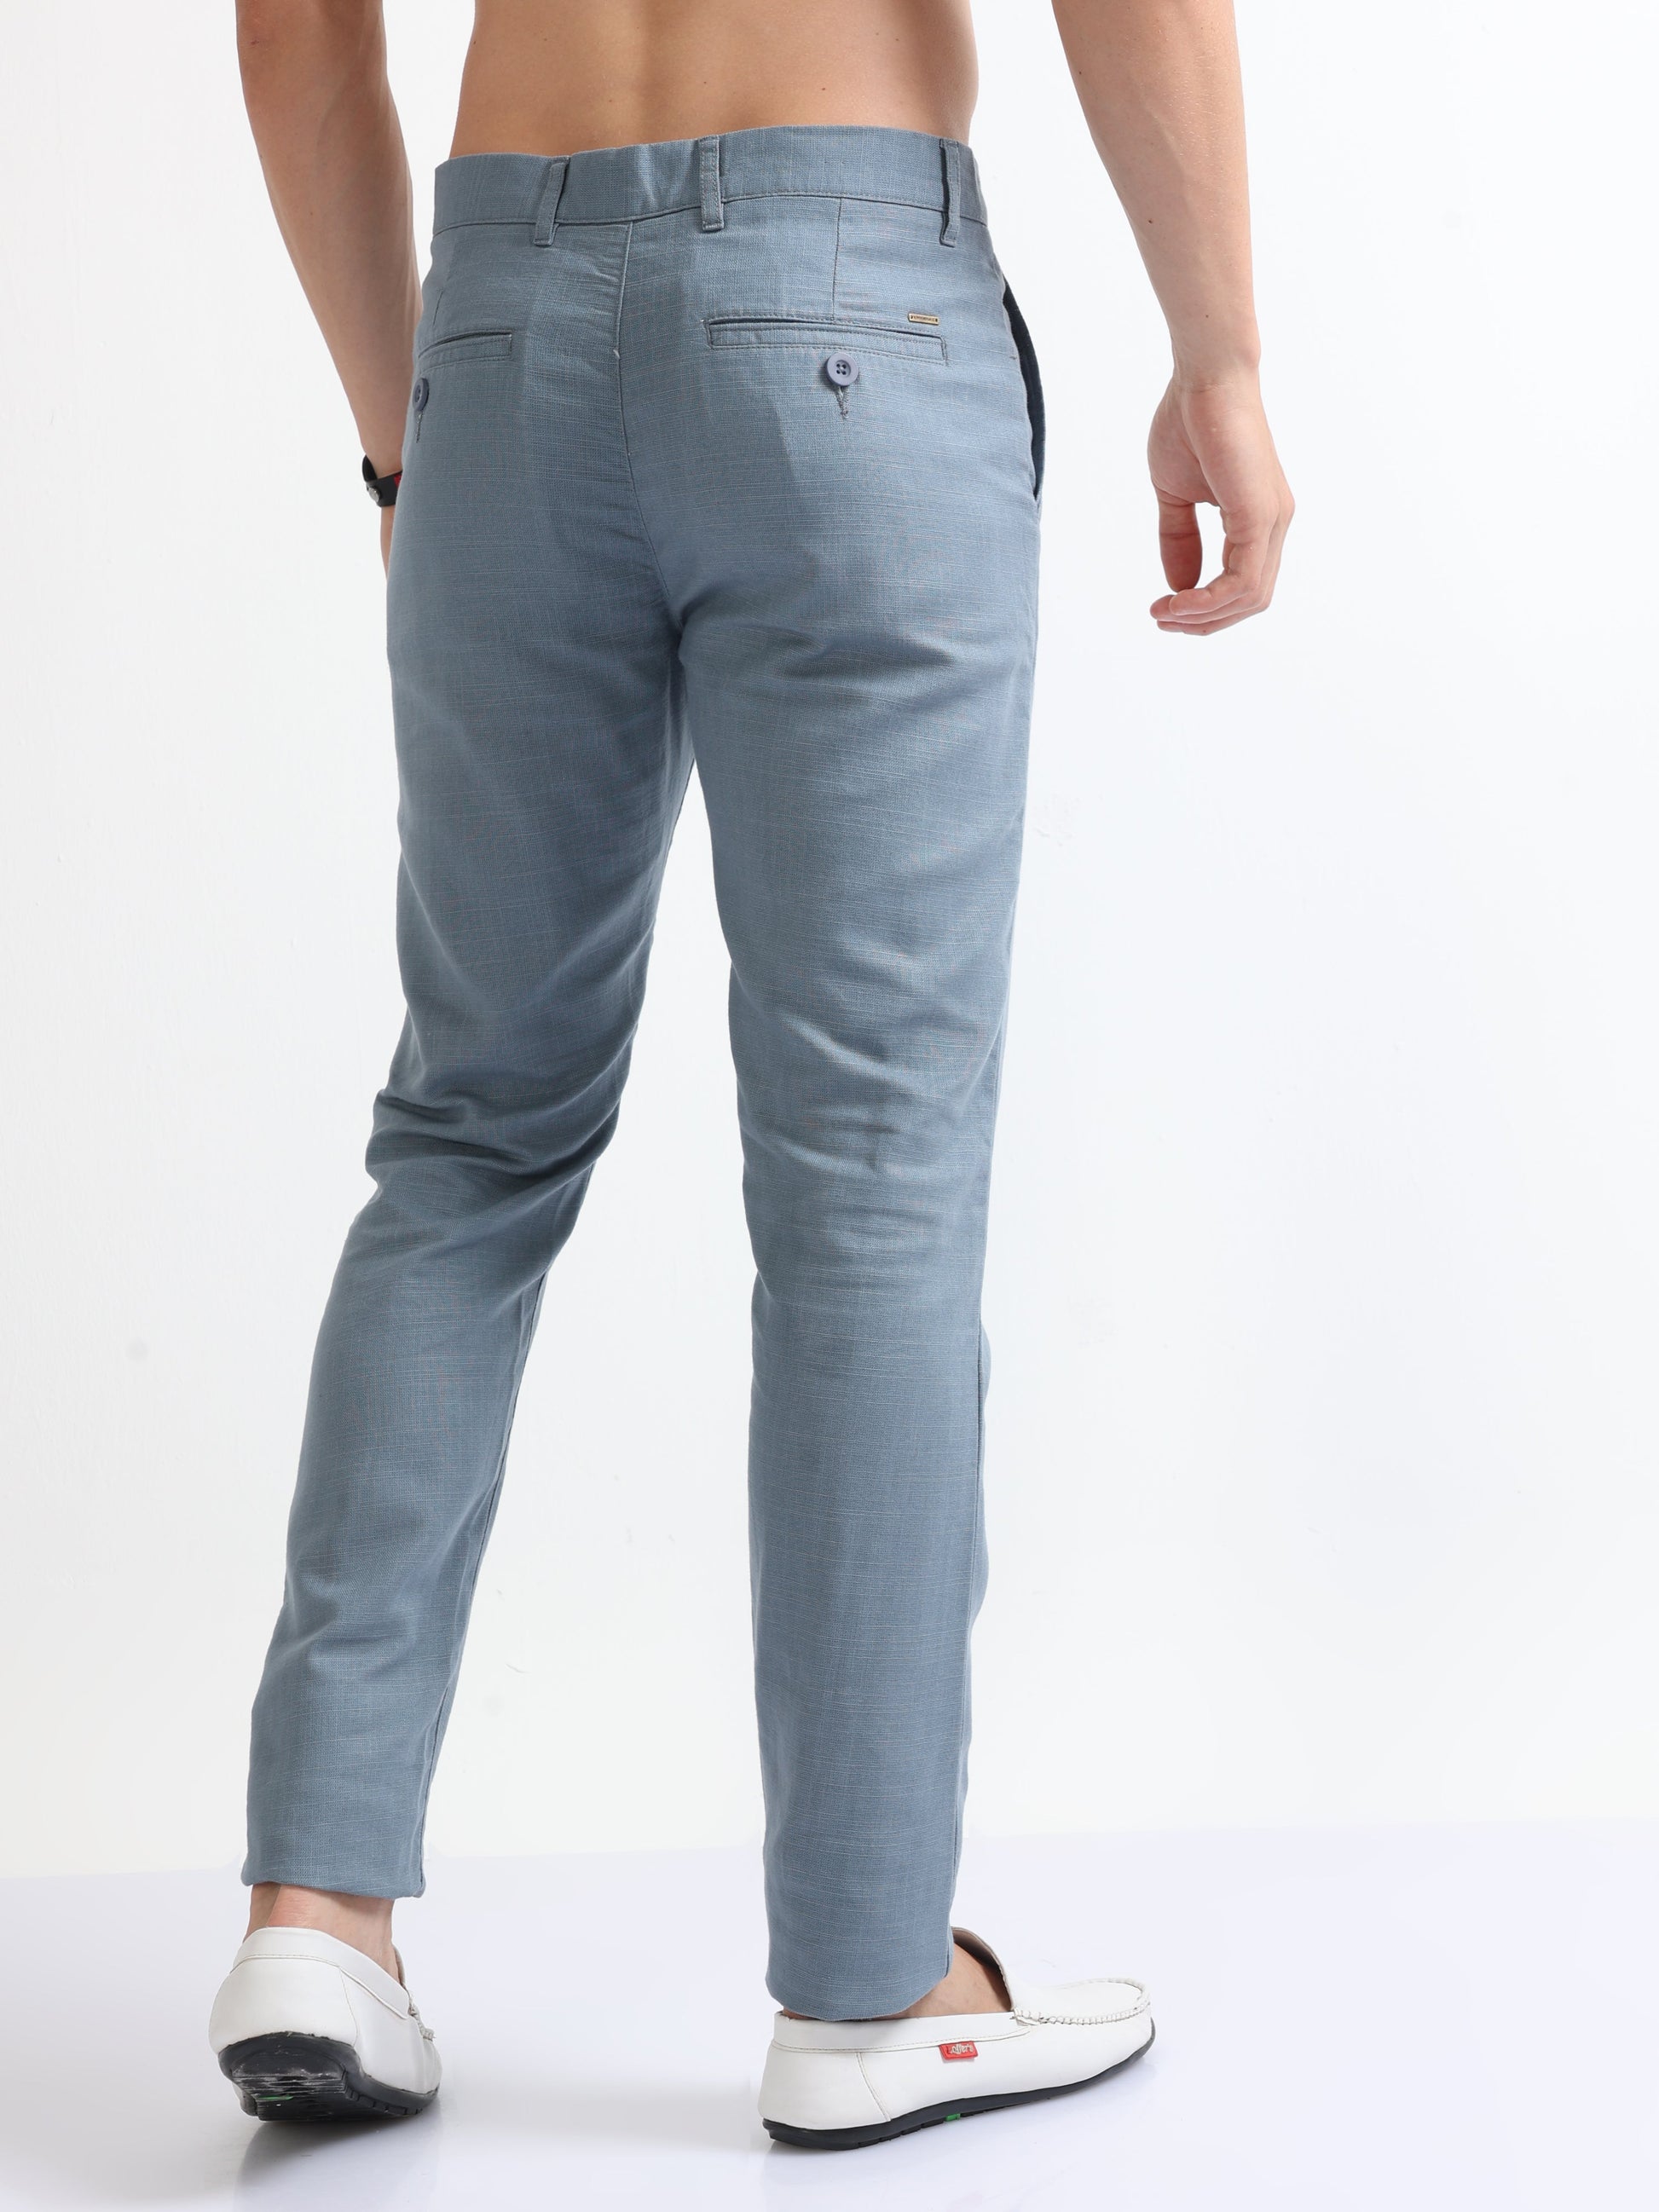 Buy Cotton-Linen Blend Trousers Online